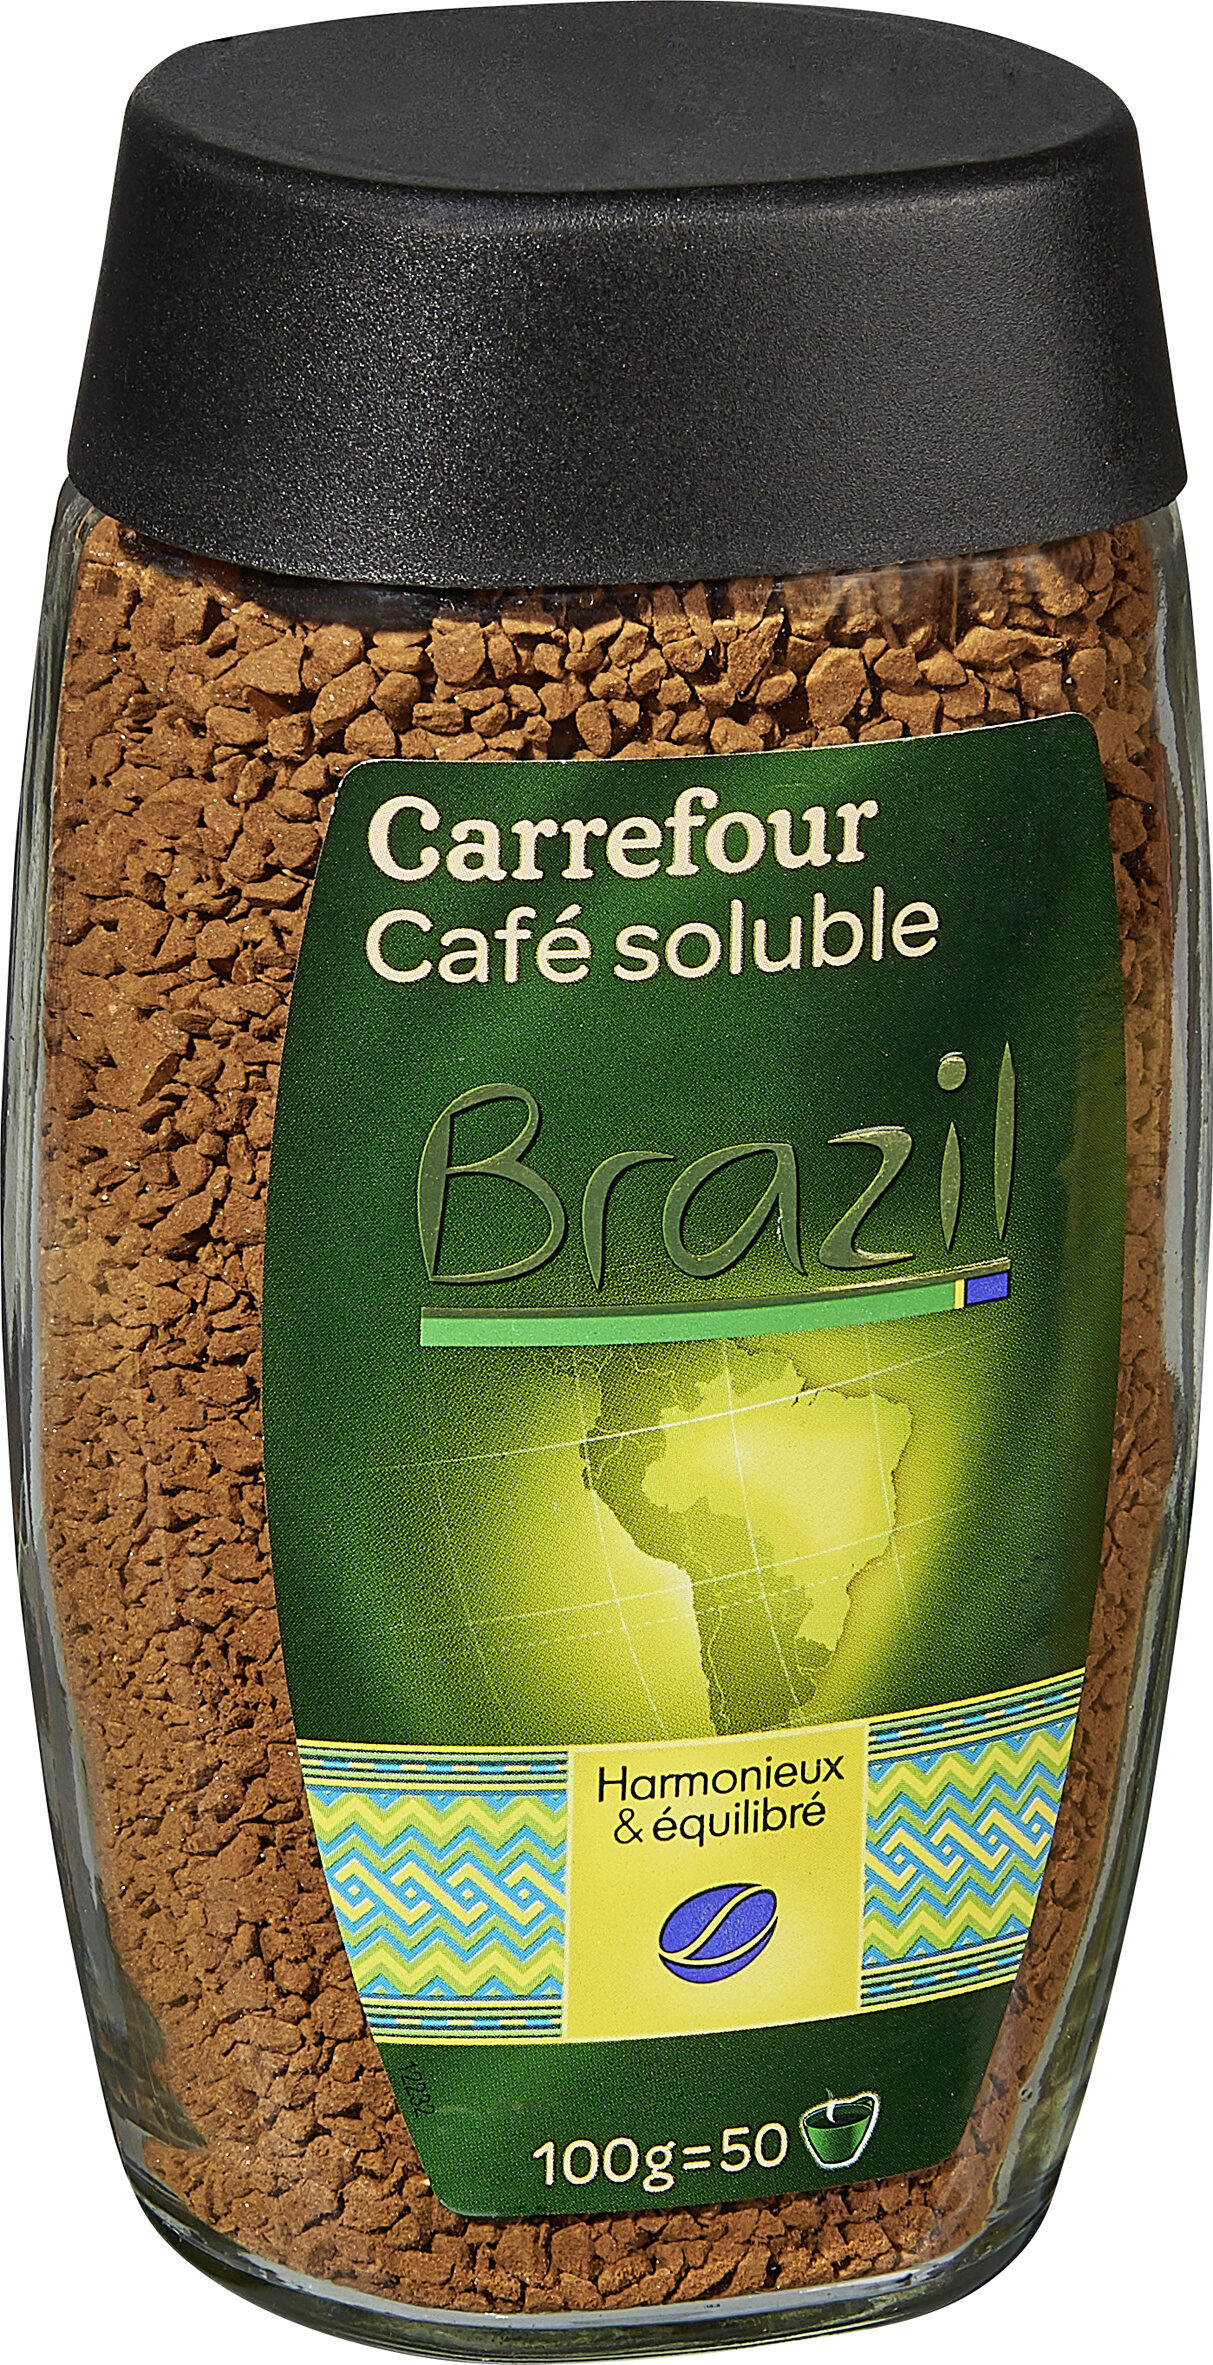 Café soluble brazil - Product - es